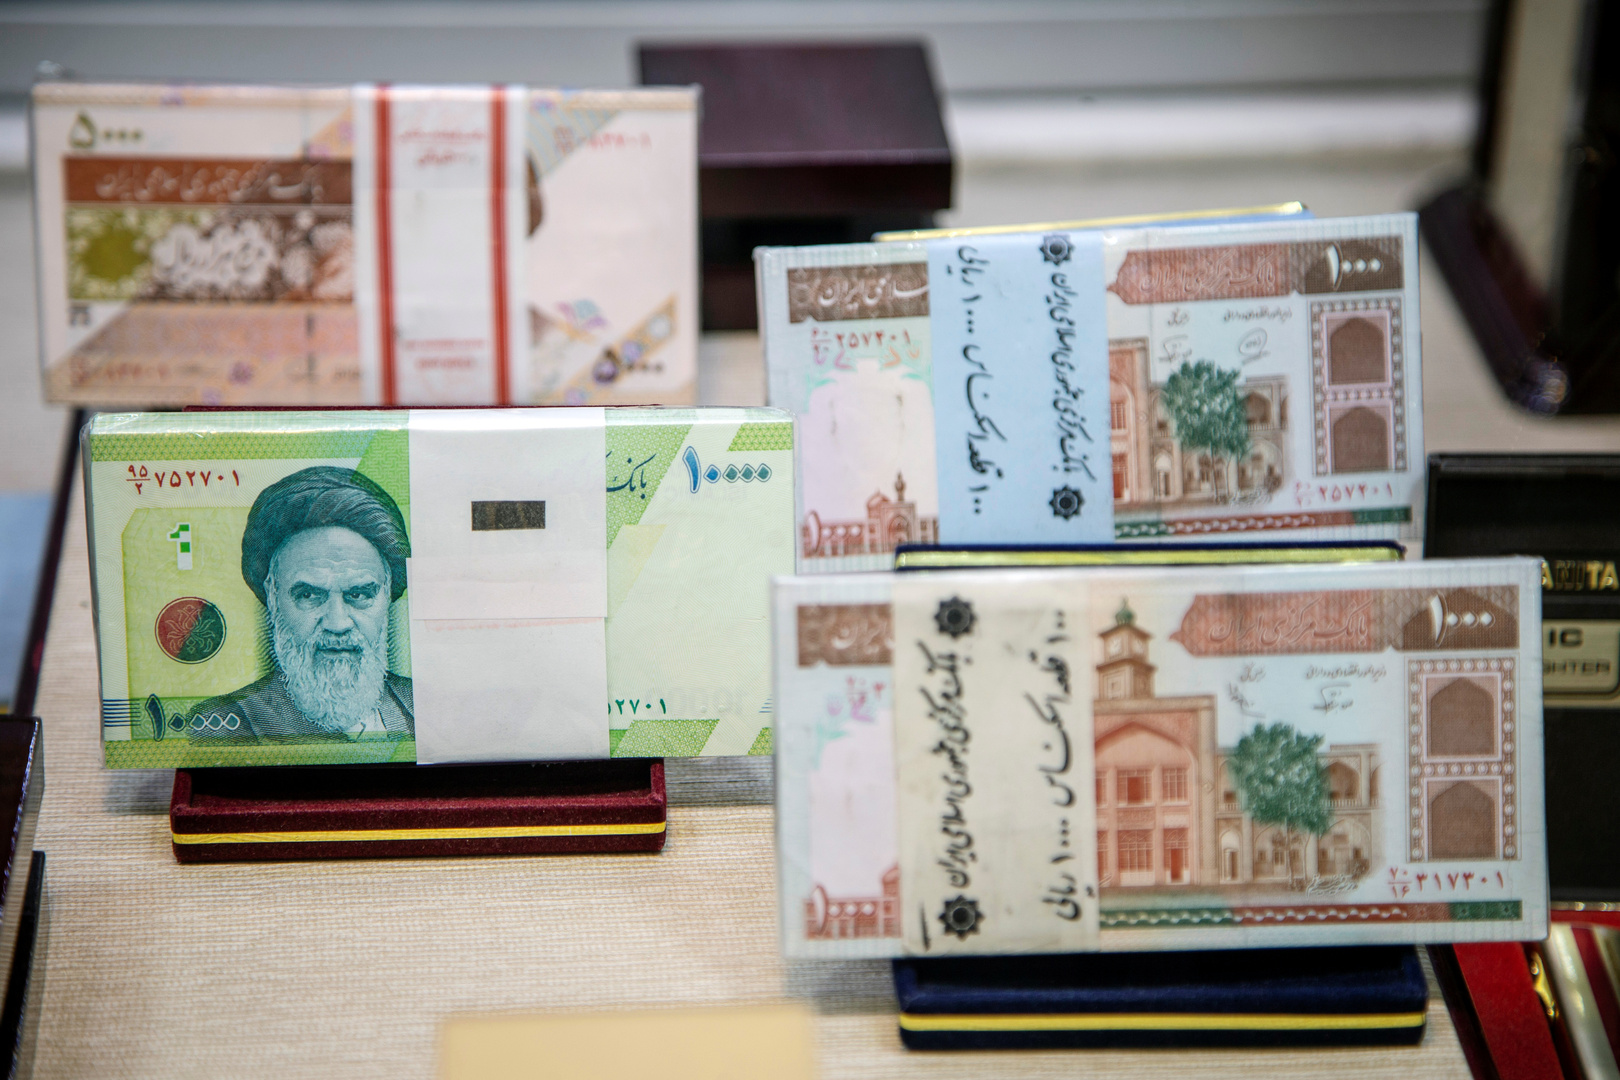 الريال الإيراني يسترد شيئا من عافيته بعد أن فقد 50% من قيمته في زمن كورونا